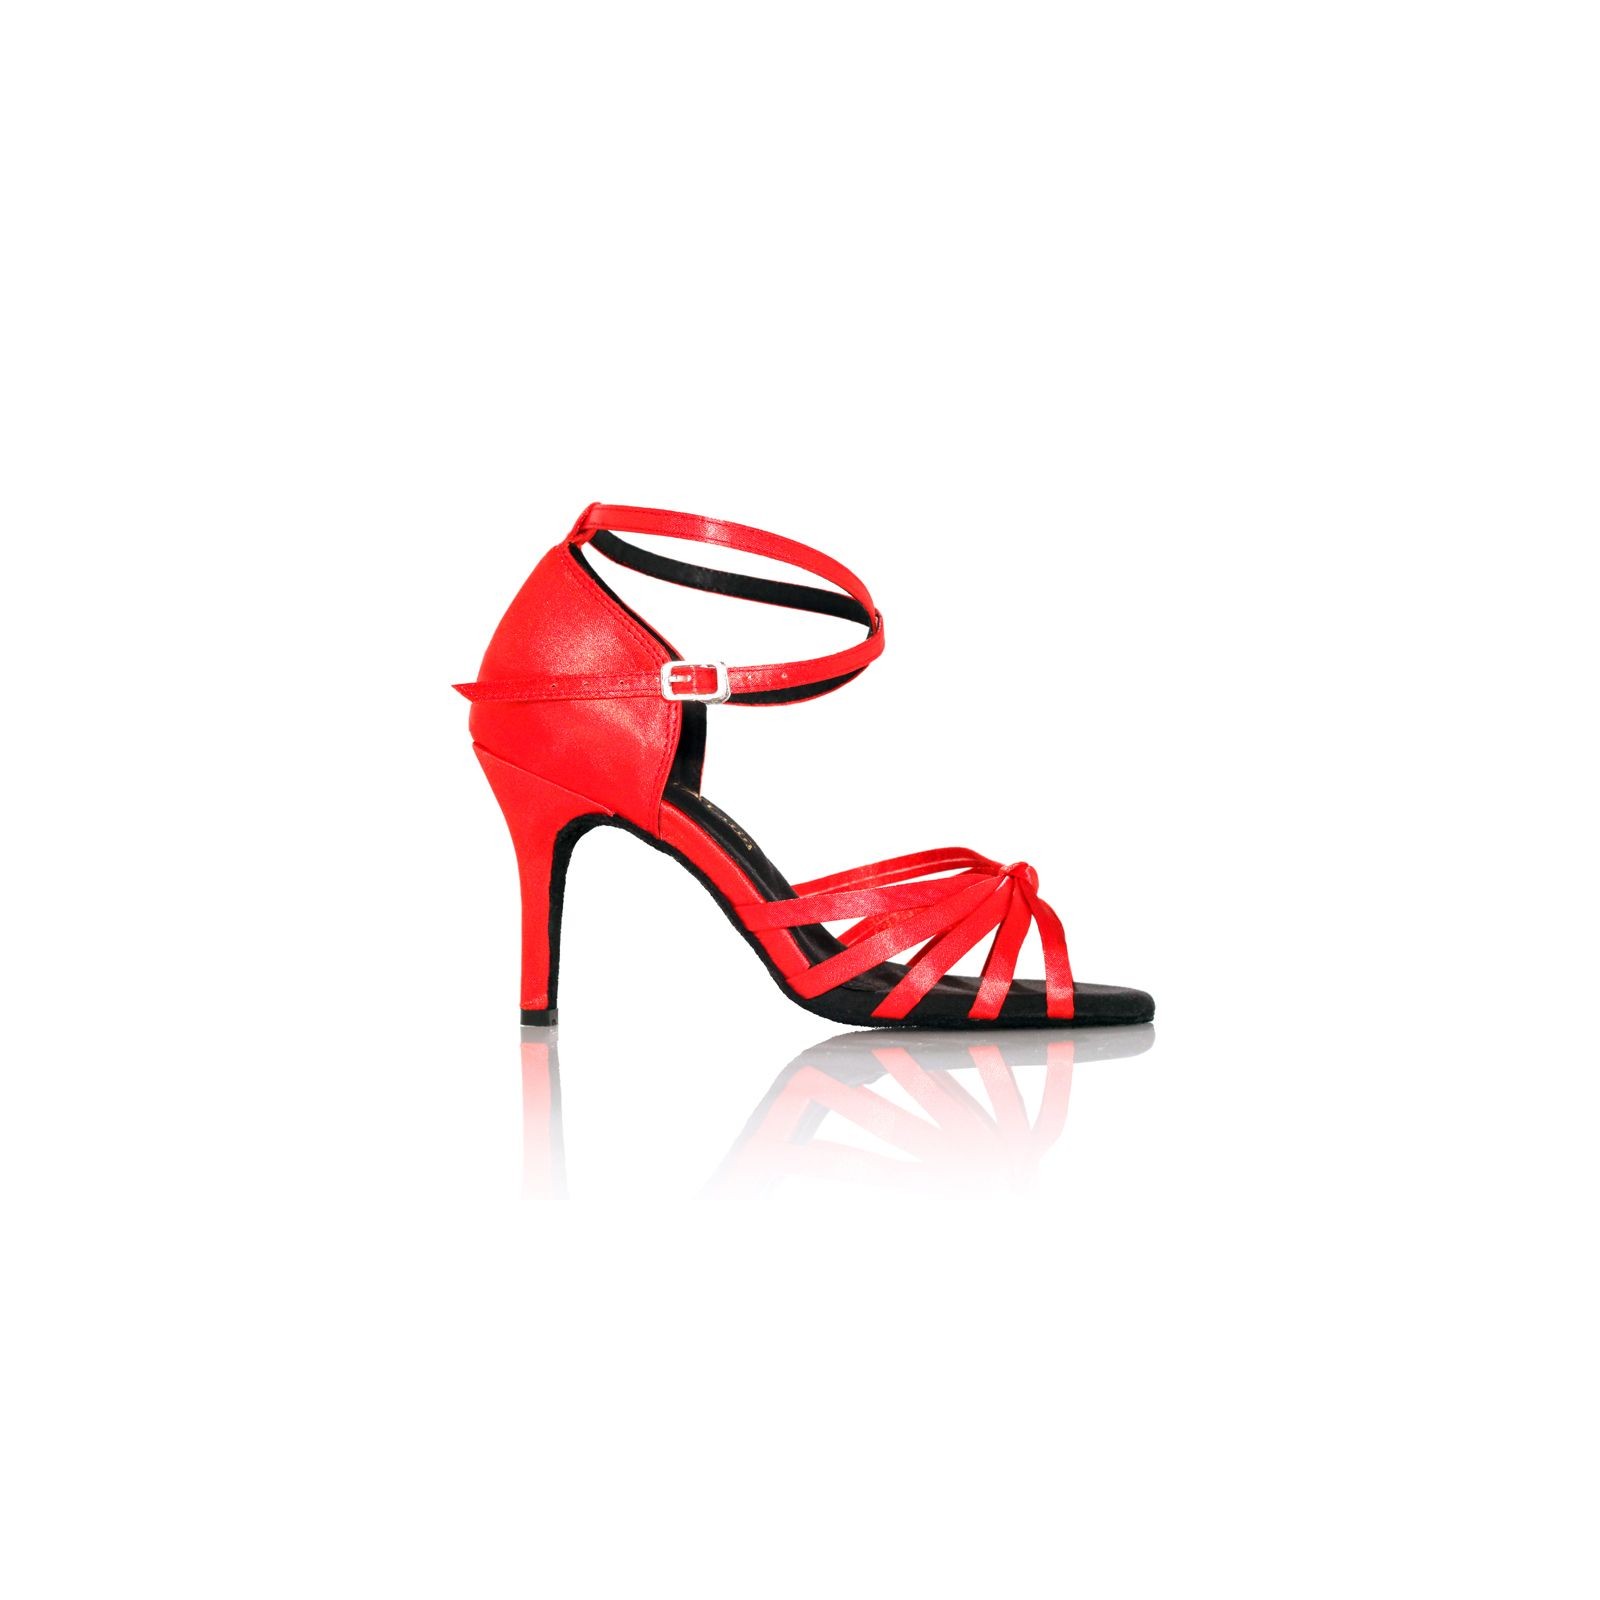 BL05 - Rosso Latino - Chaussure de danse en cuir rouge